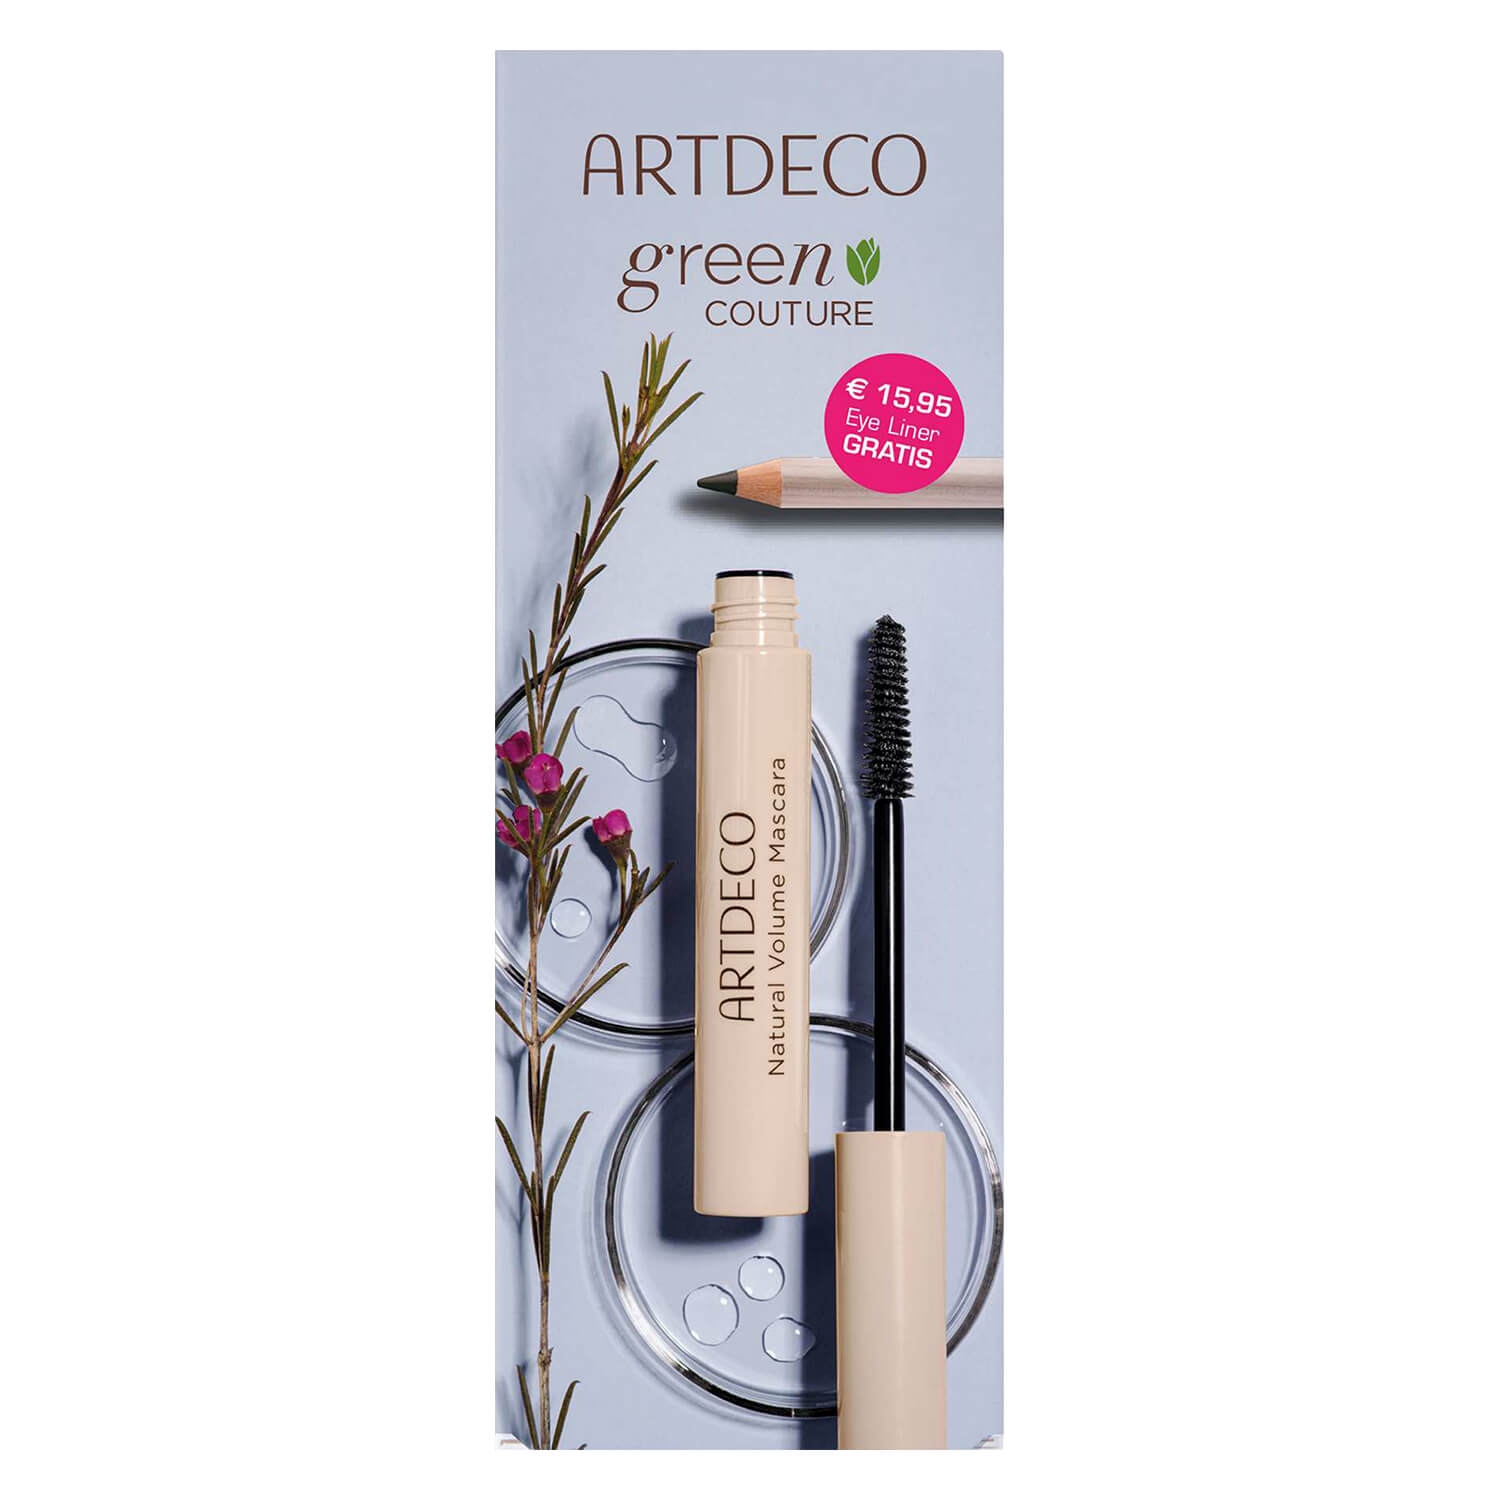 Produktbild von green COUTURE - Natural Volume Mascara & Smooth Eyeliner Set